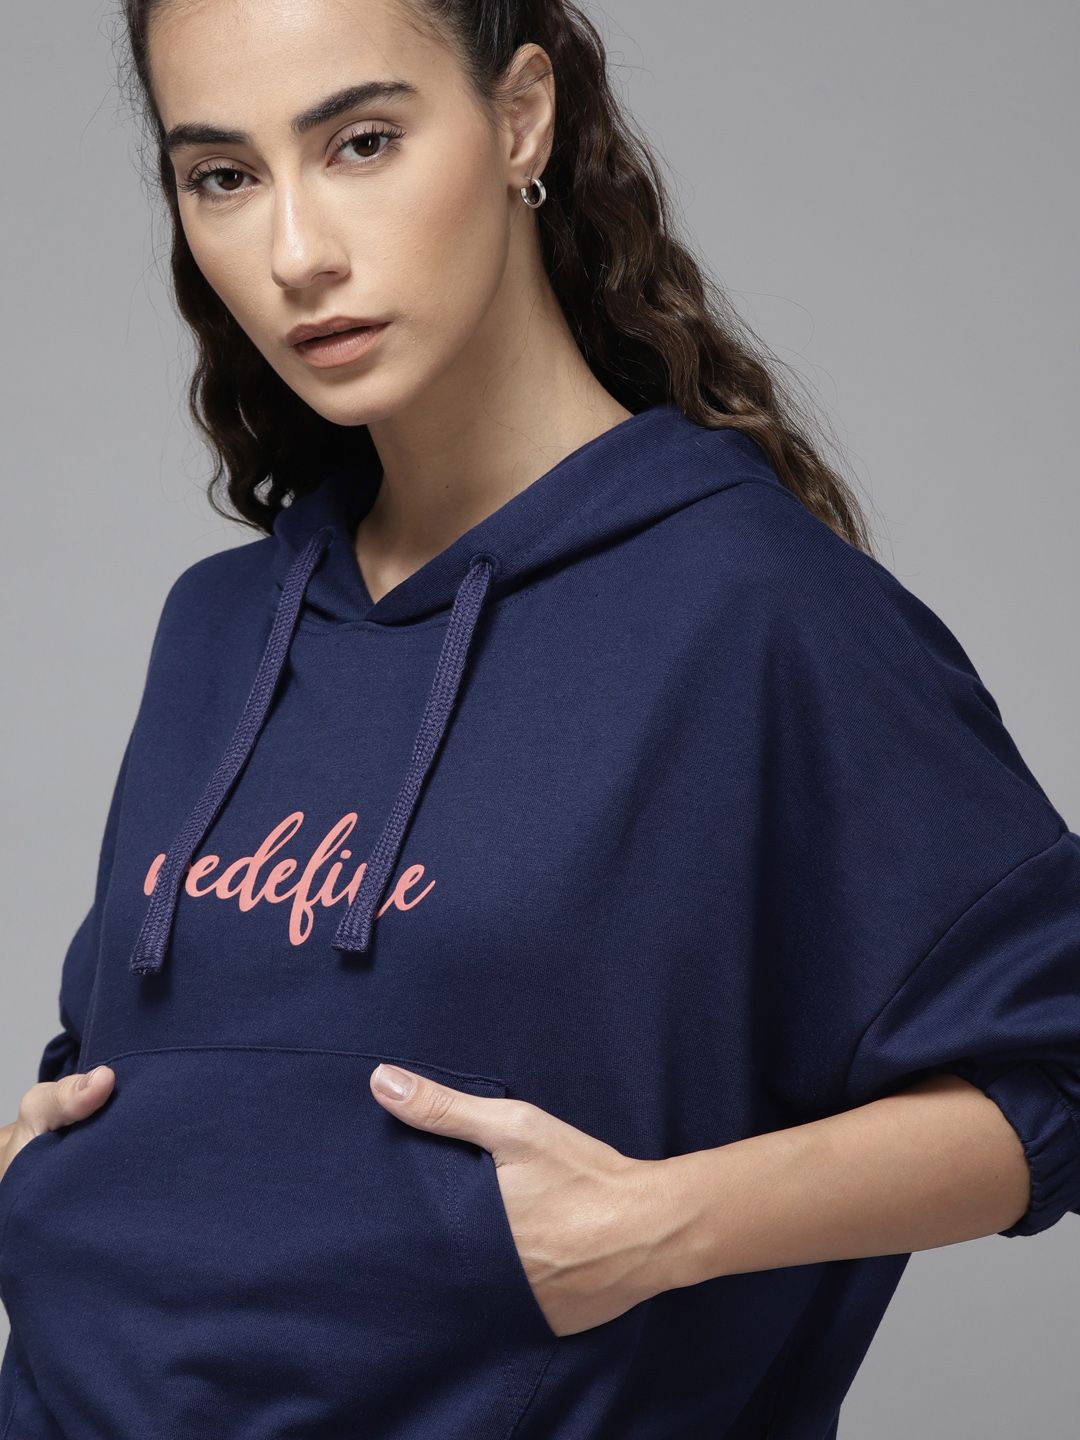 Roadster Women Navy Blue Printed Hooded Sweatshirt Price in India